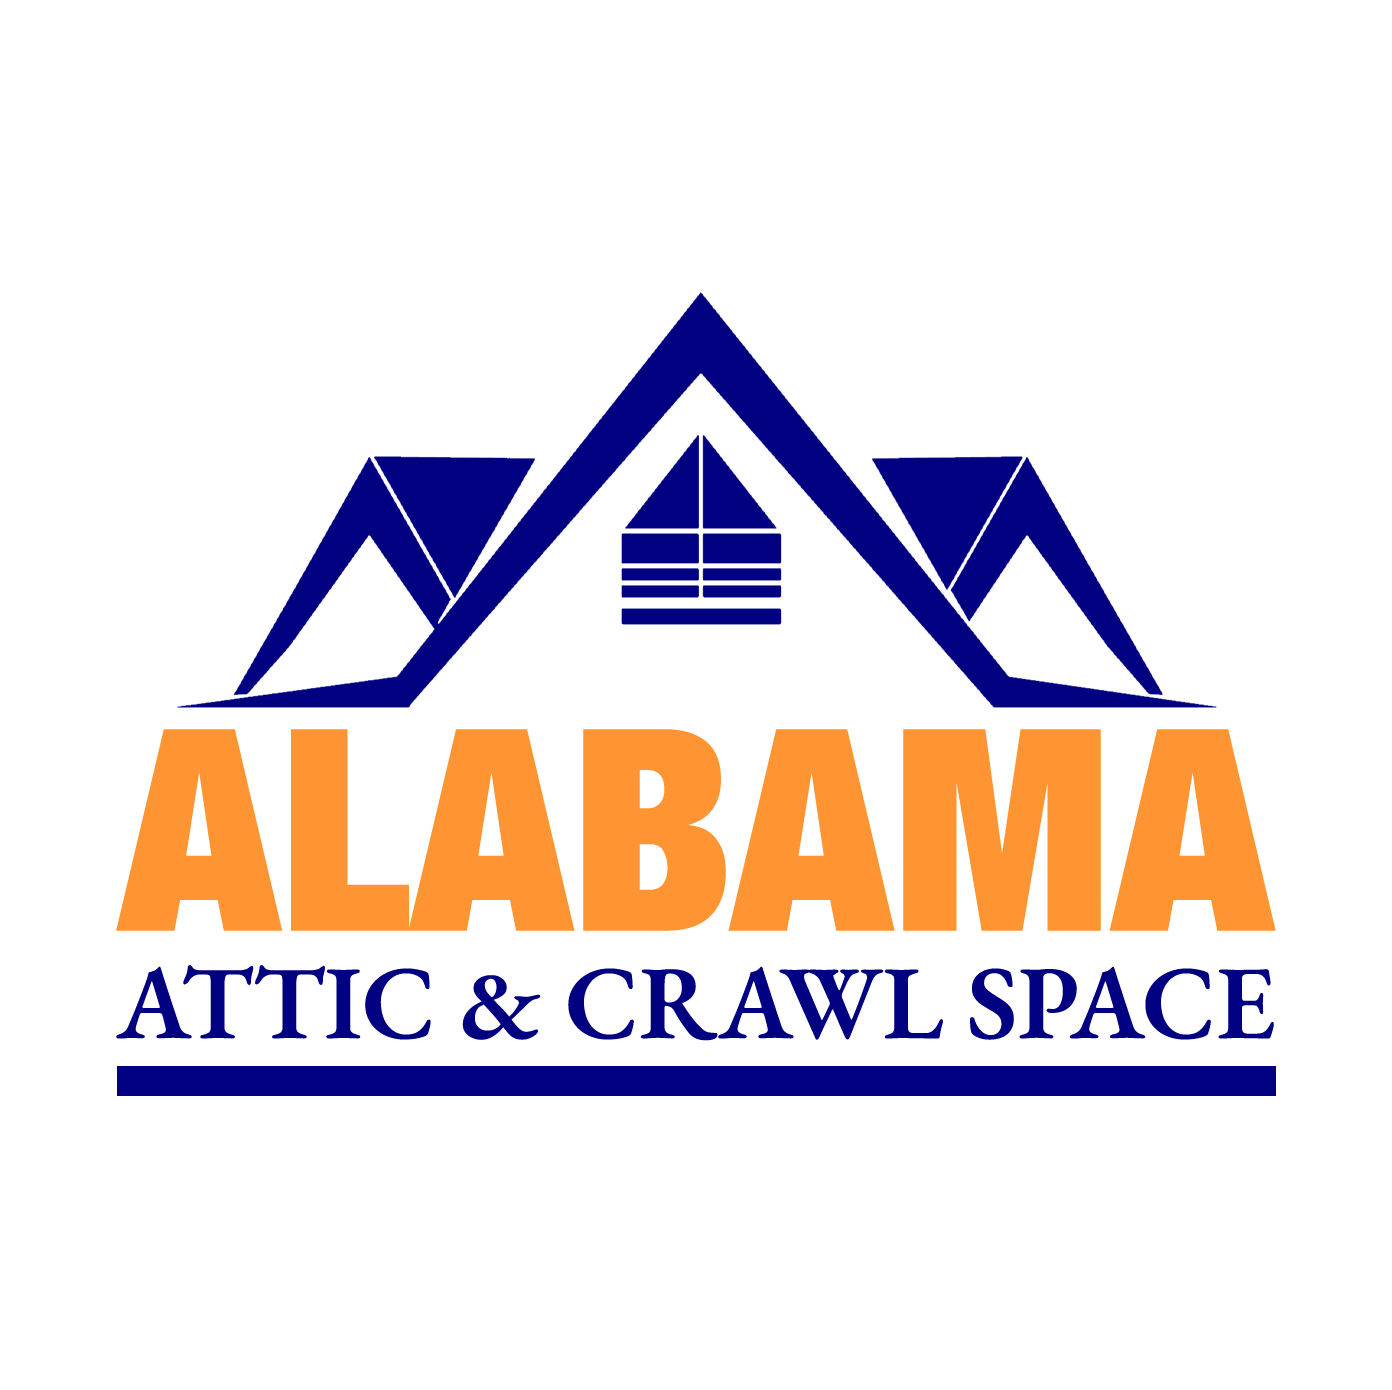 Alabama Attic & Crawlspace